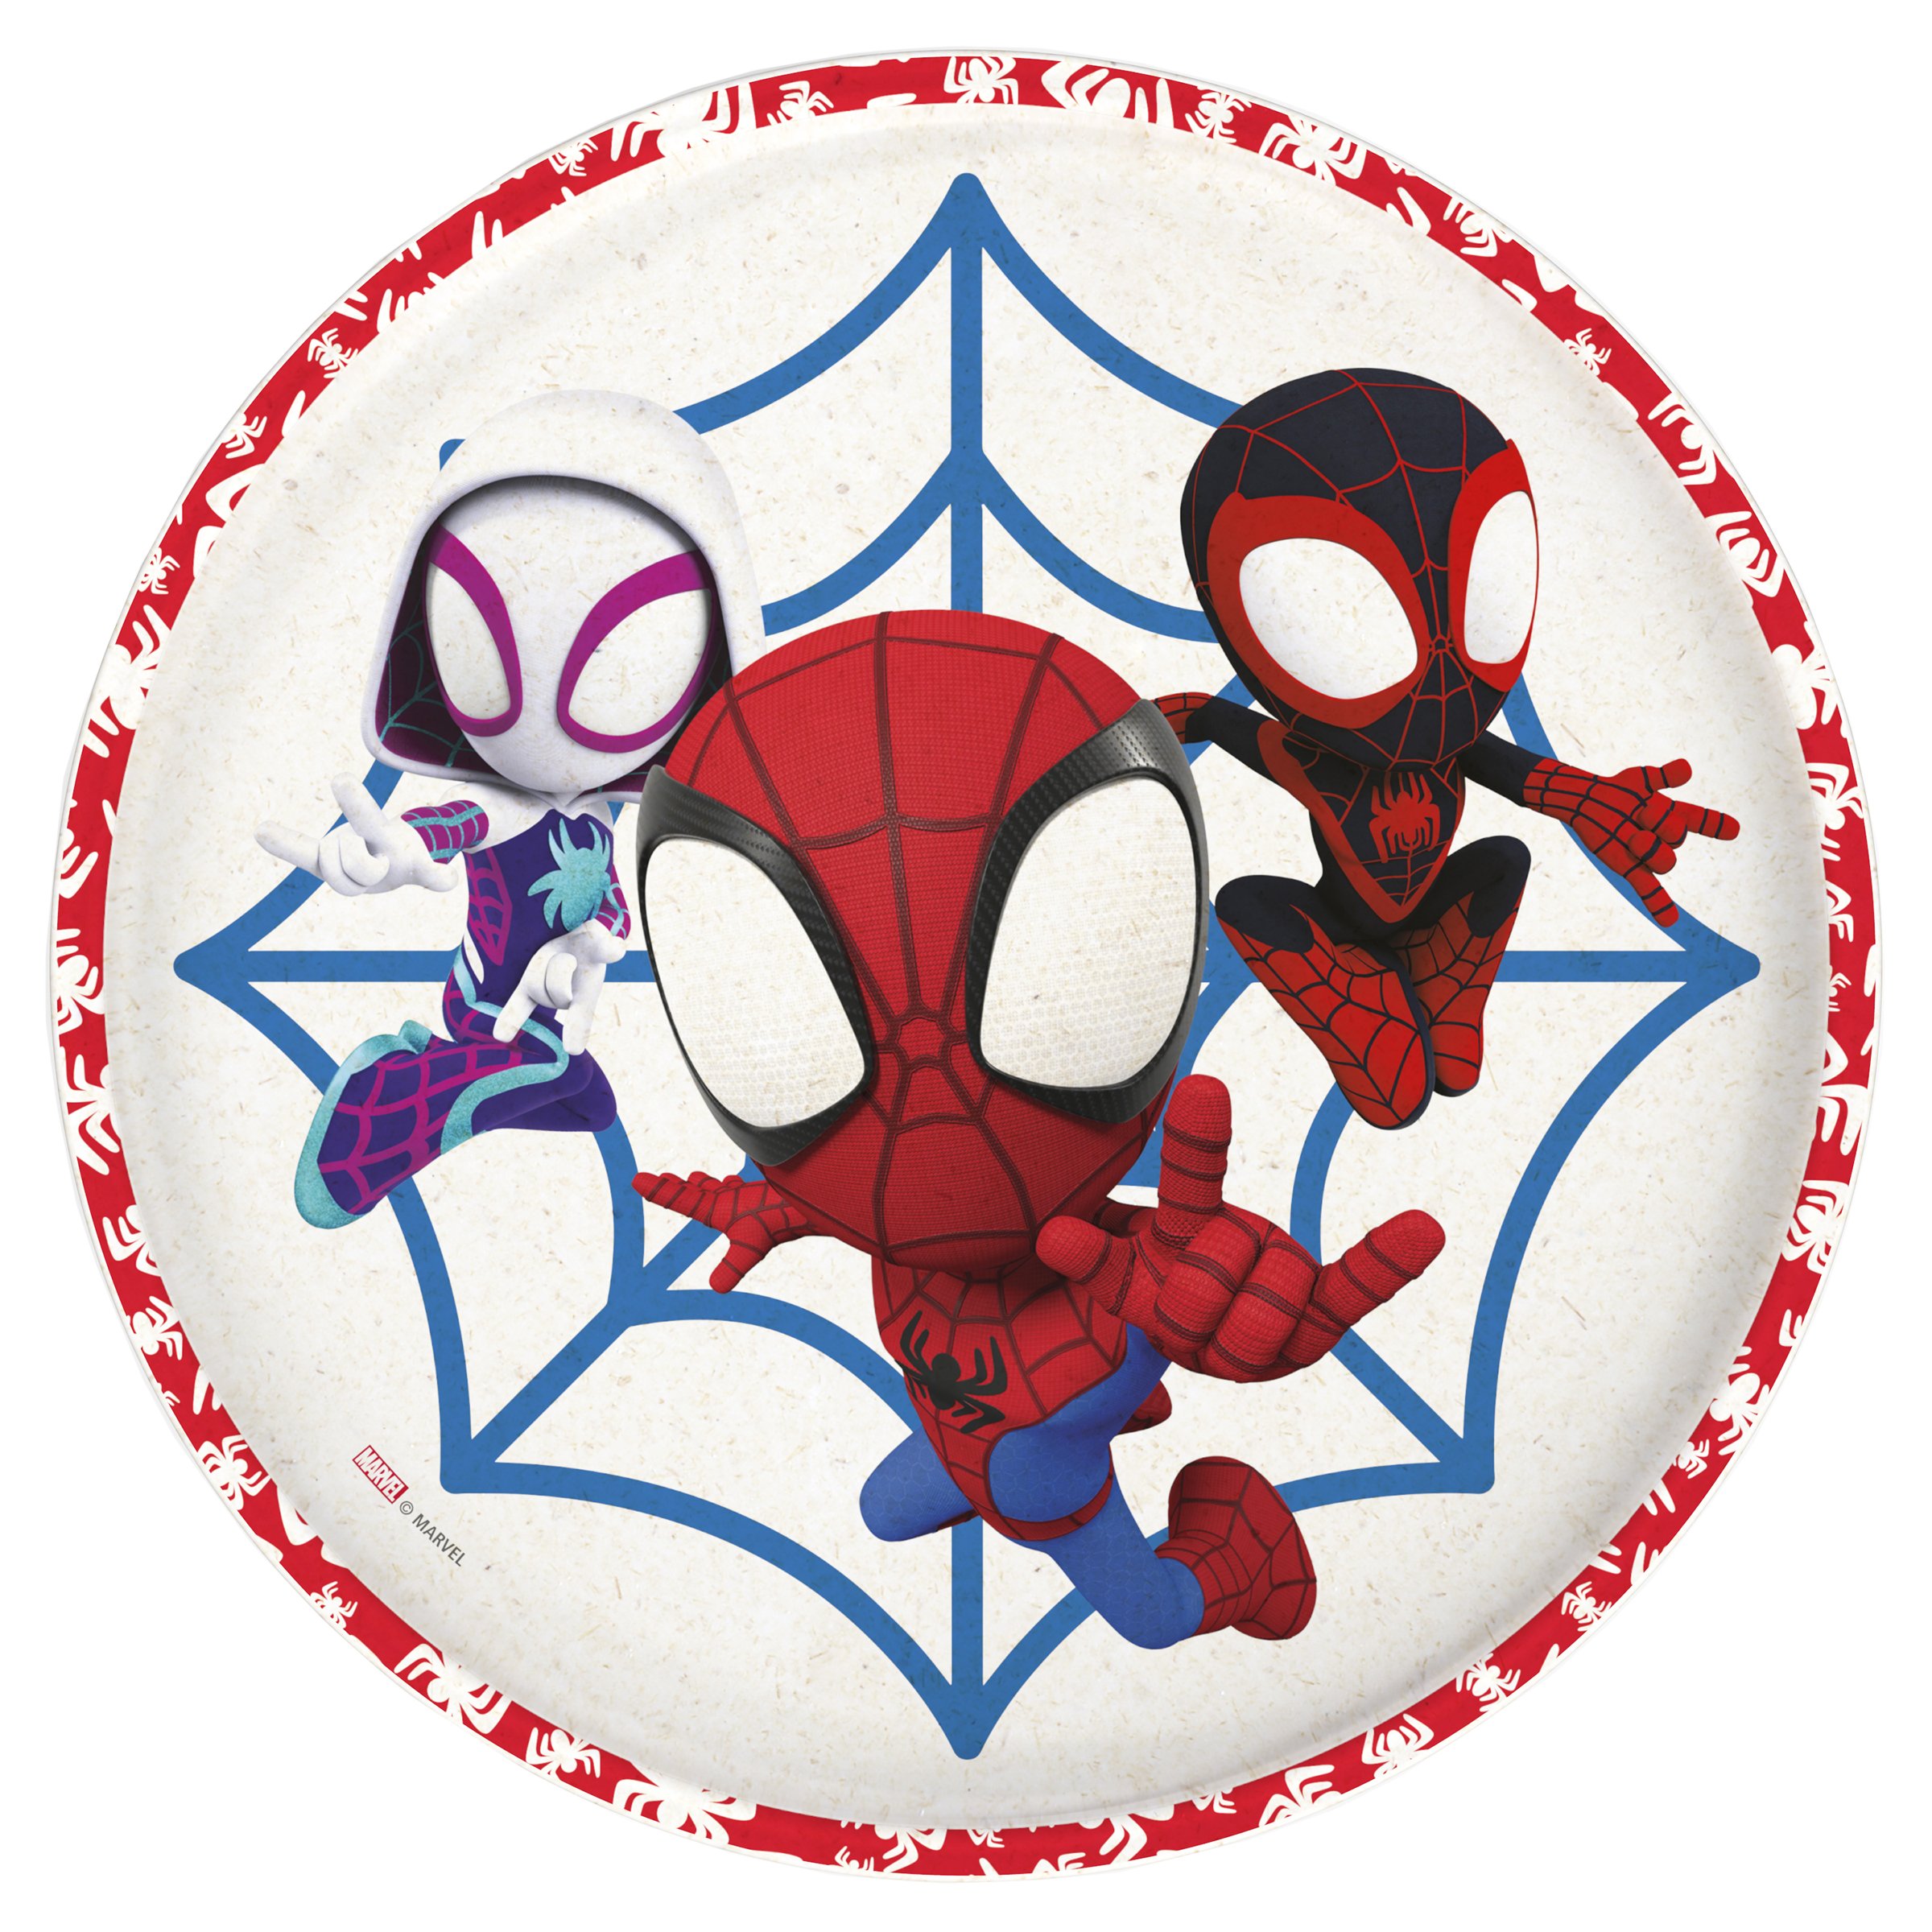 Zak Marvel Spider-Man Melamine Plastic Kids' Dinnerware 3-Section Divided Plate 